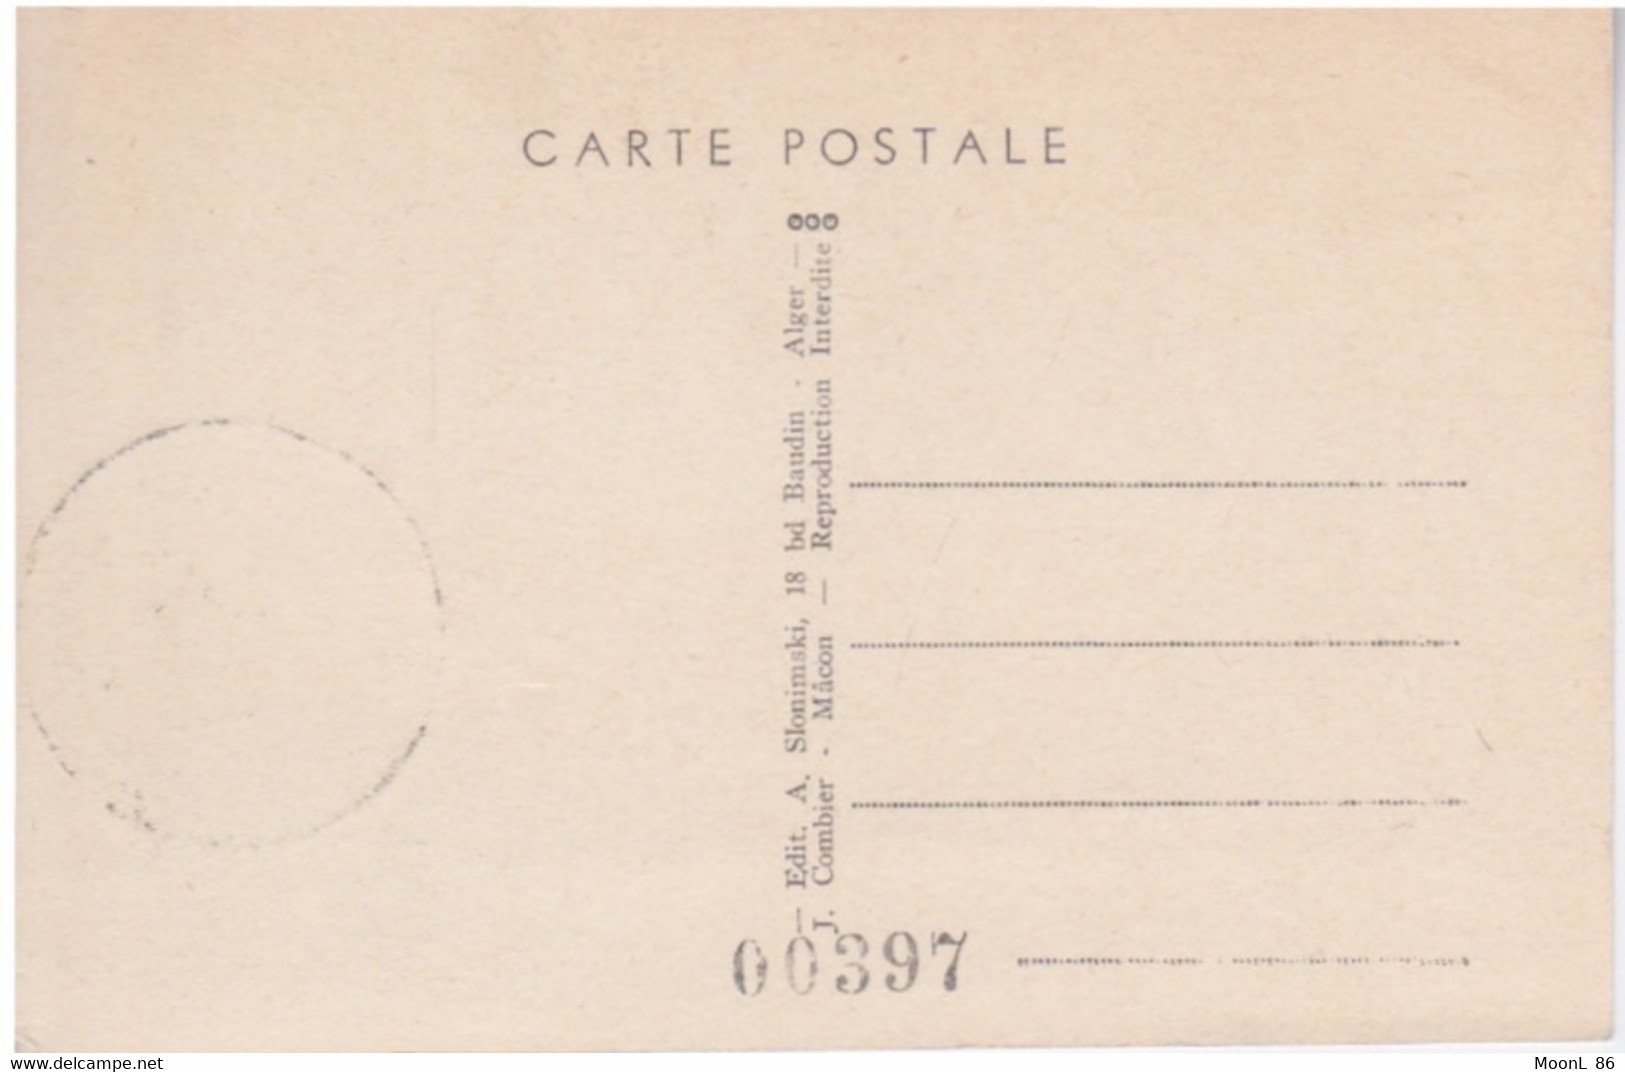 FDC - CARTE POSTALE 1 ER JOUR  - LES ORANGES - CACHET ALGER 9 MAI 1954 - 3° CONGRES INTERNATIONAL AGRUMICULTURE - FDC